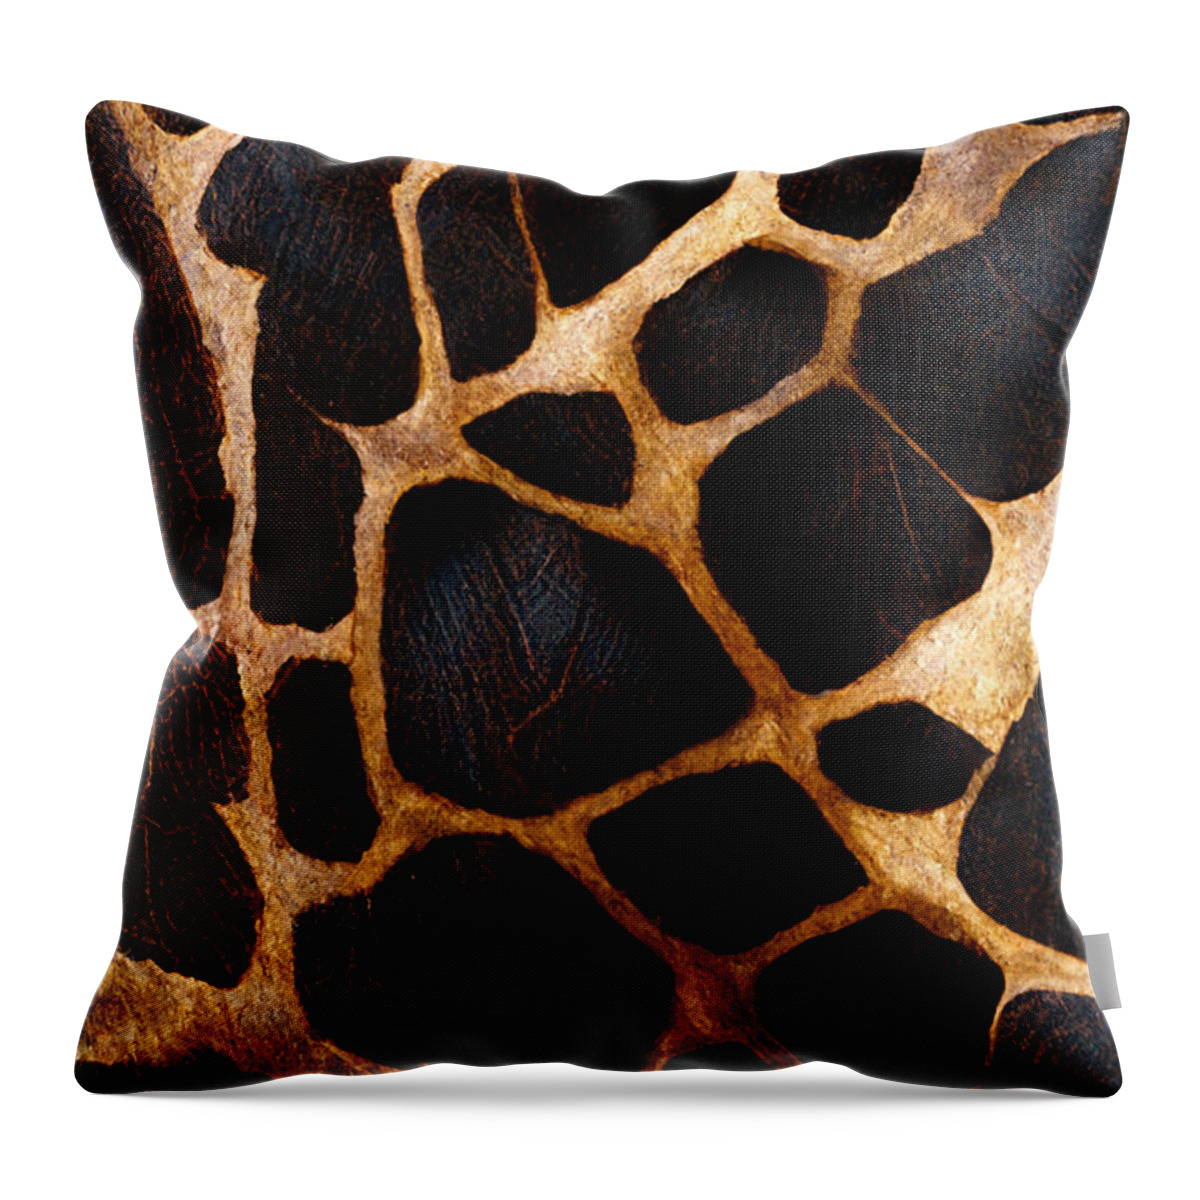 Giraffe Throw Pillow featuring the digital art Love giraffes #1 by Sabantha